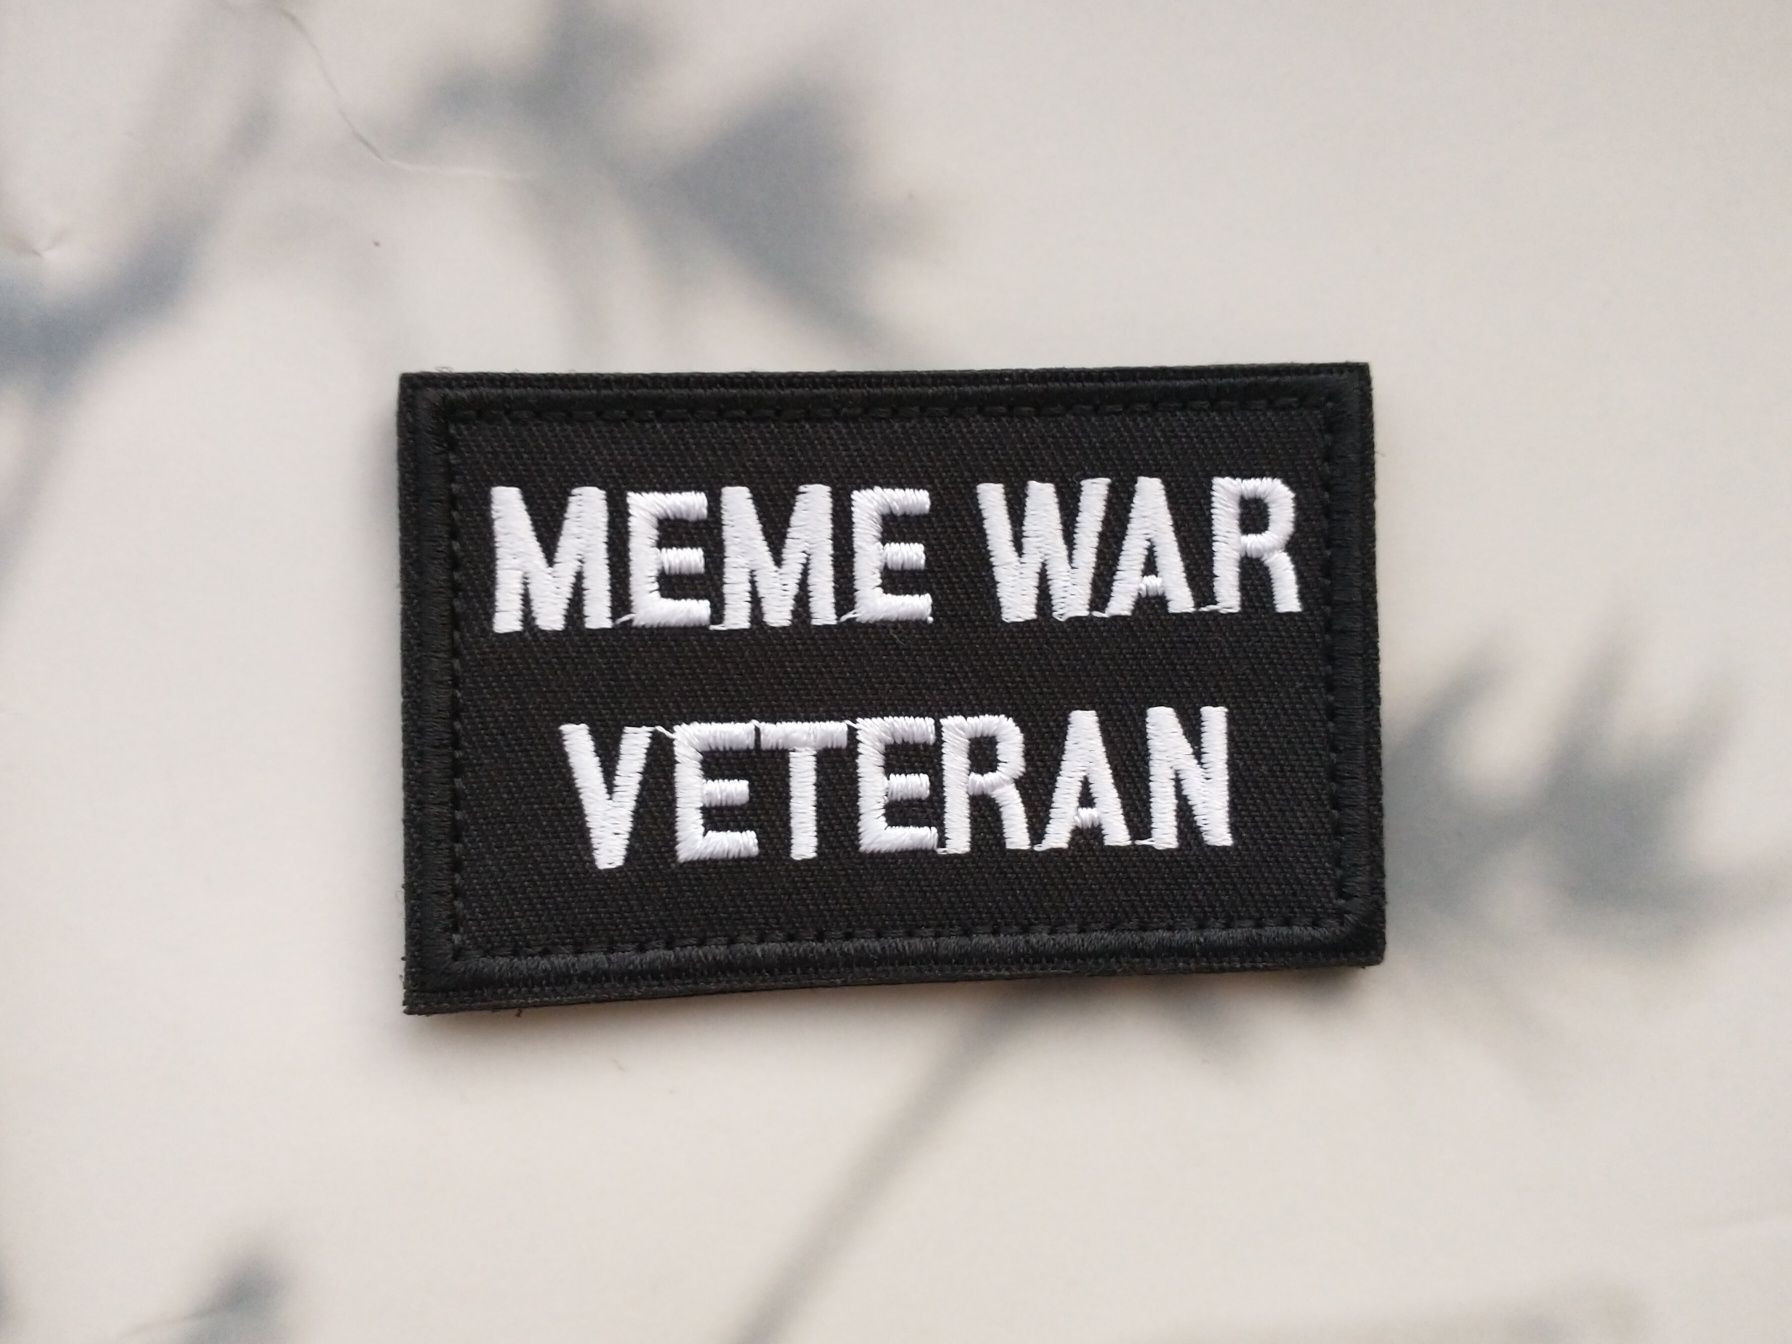 naszywka Meme War Veteran memy mem